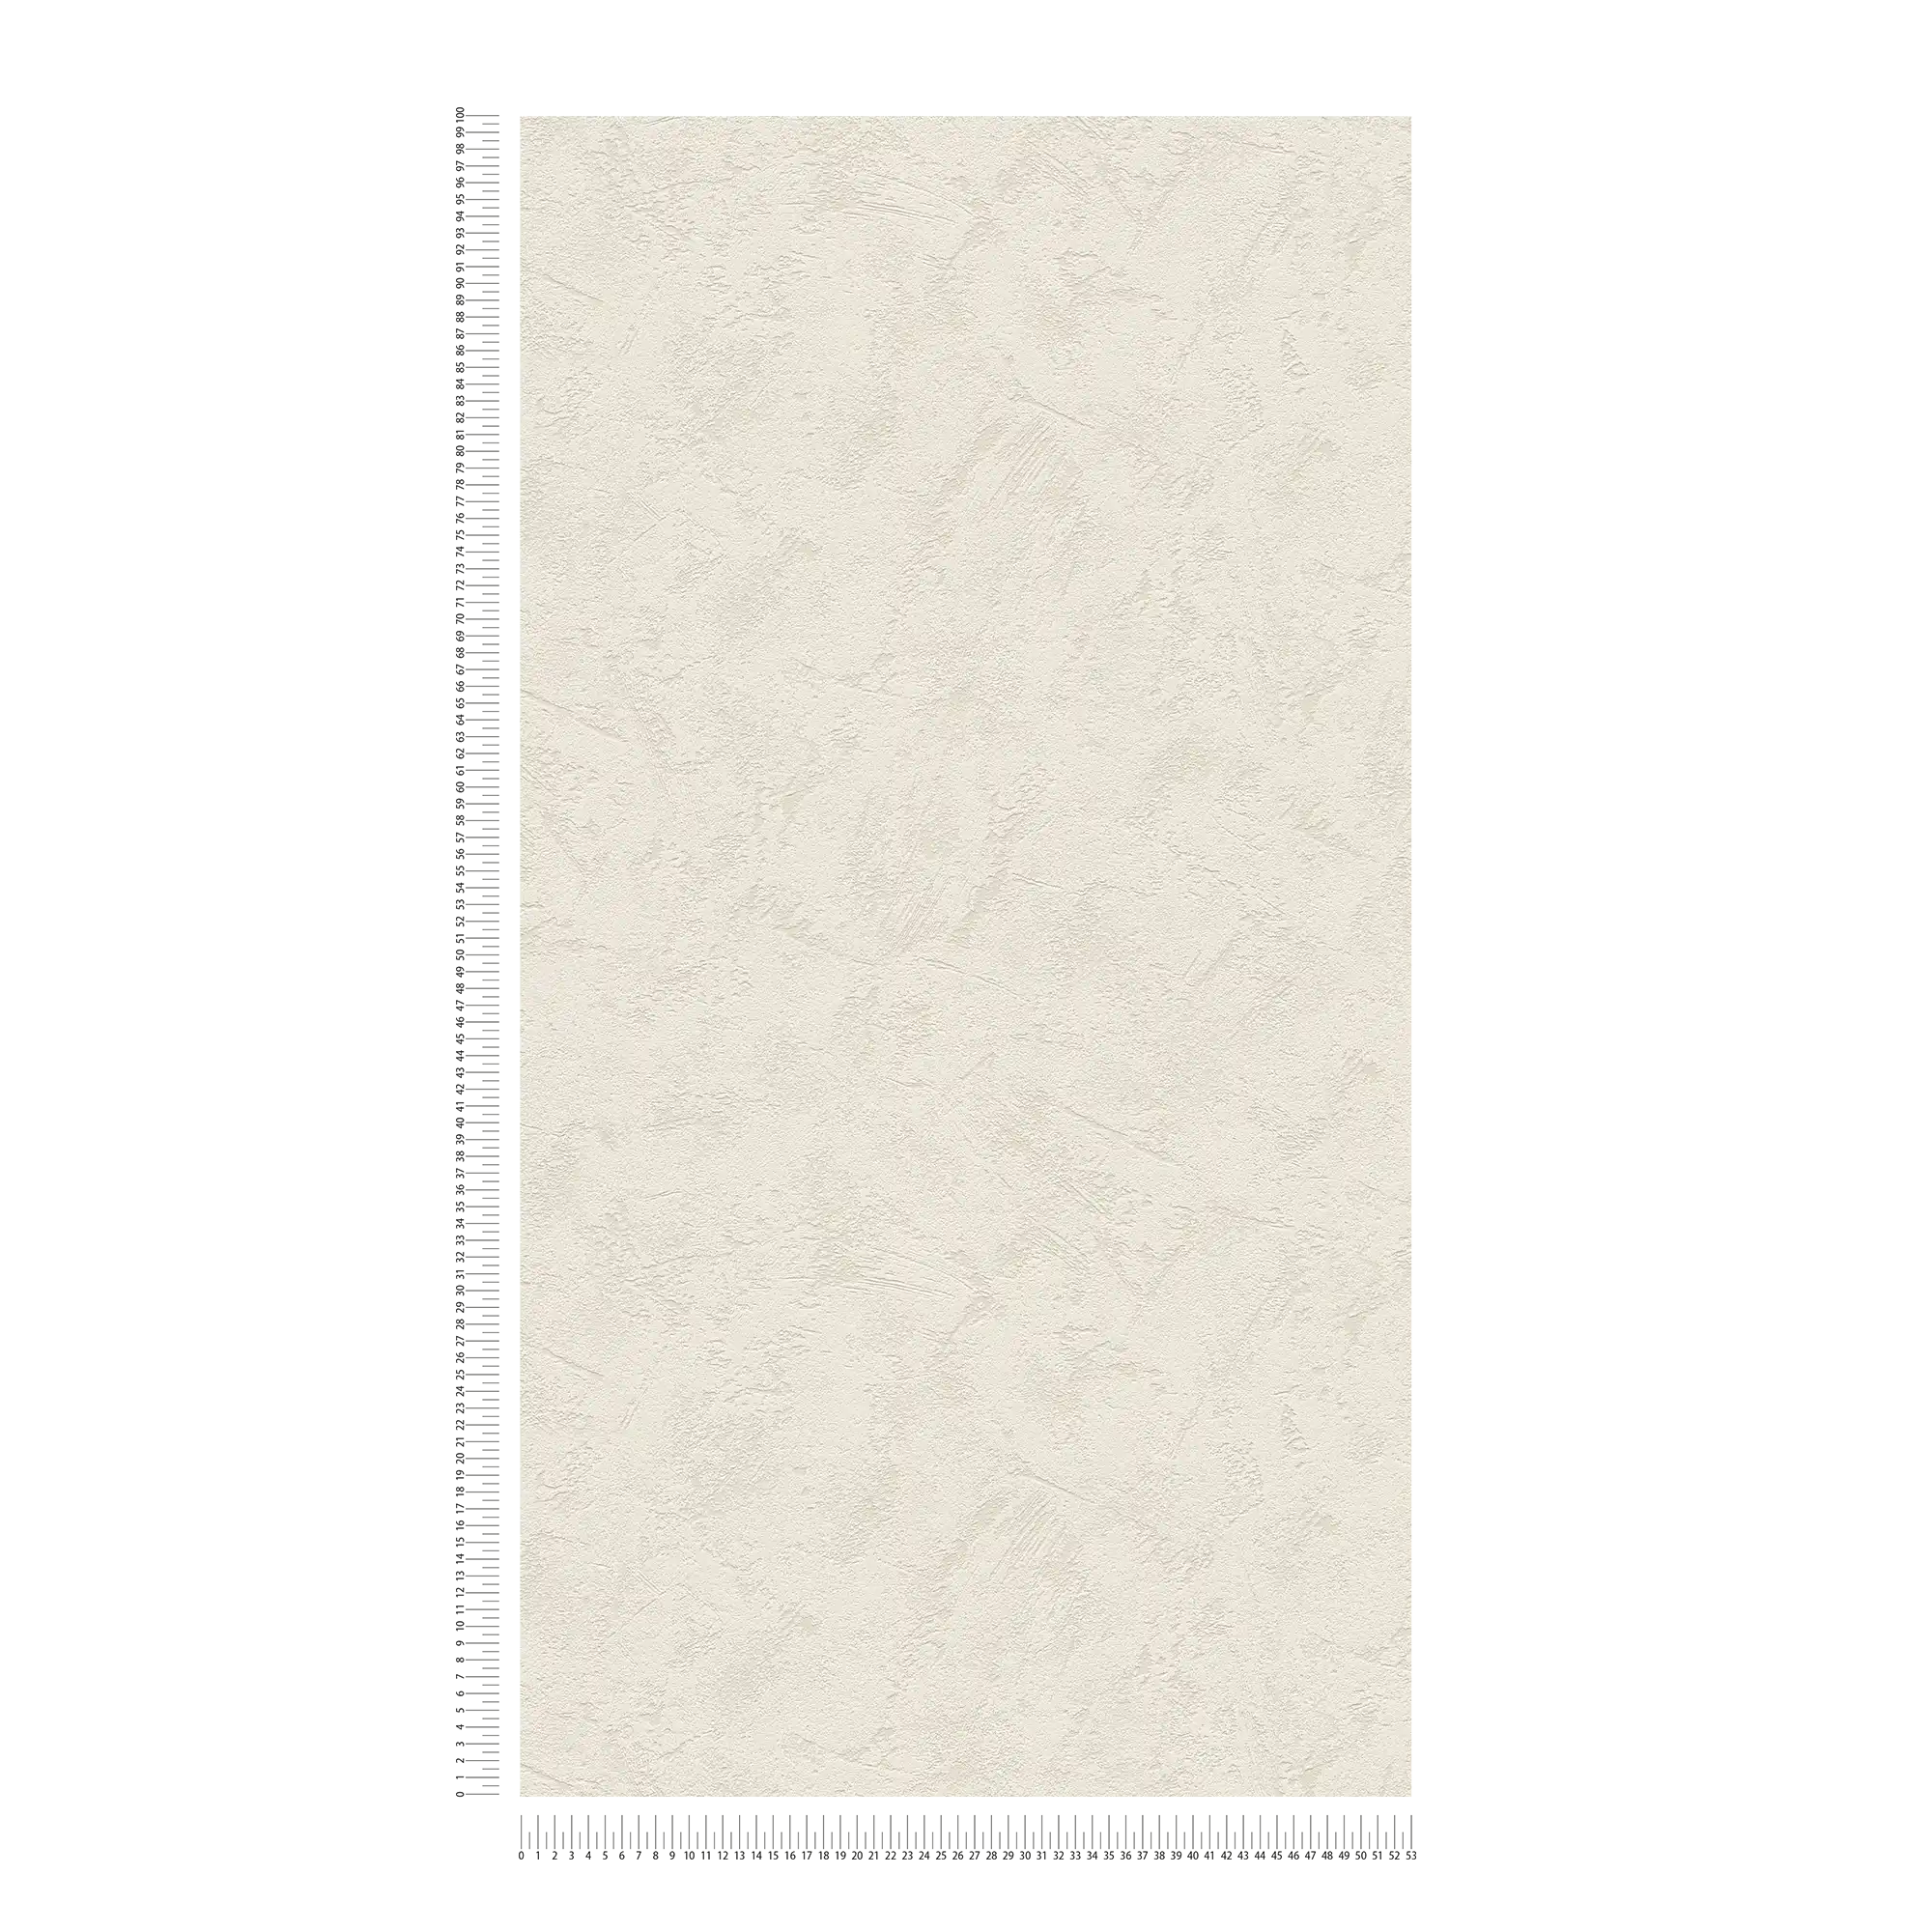             Klassische Putzoptik Tapete helles Grau mit Kellenputz Muster
        